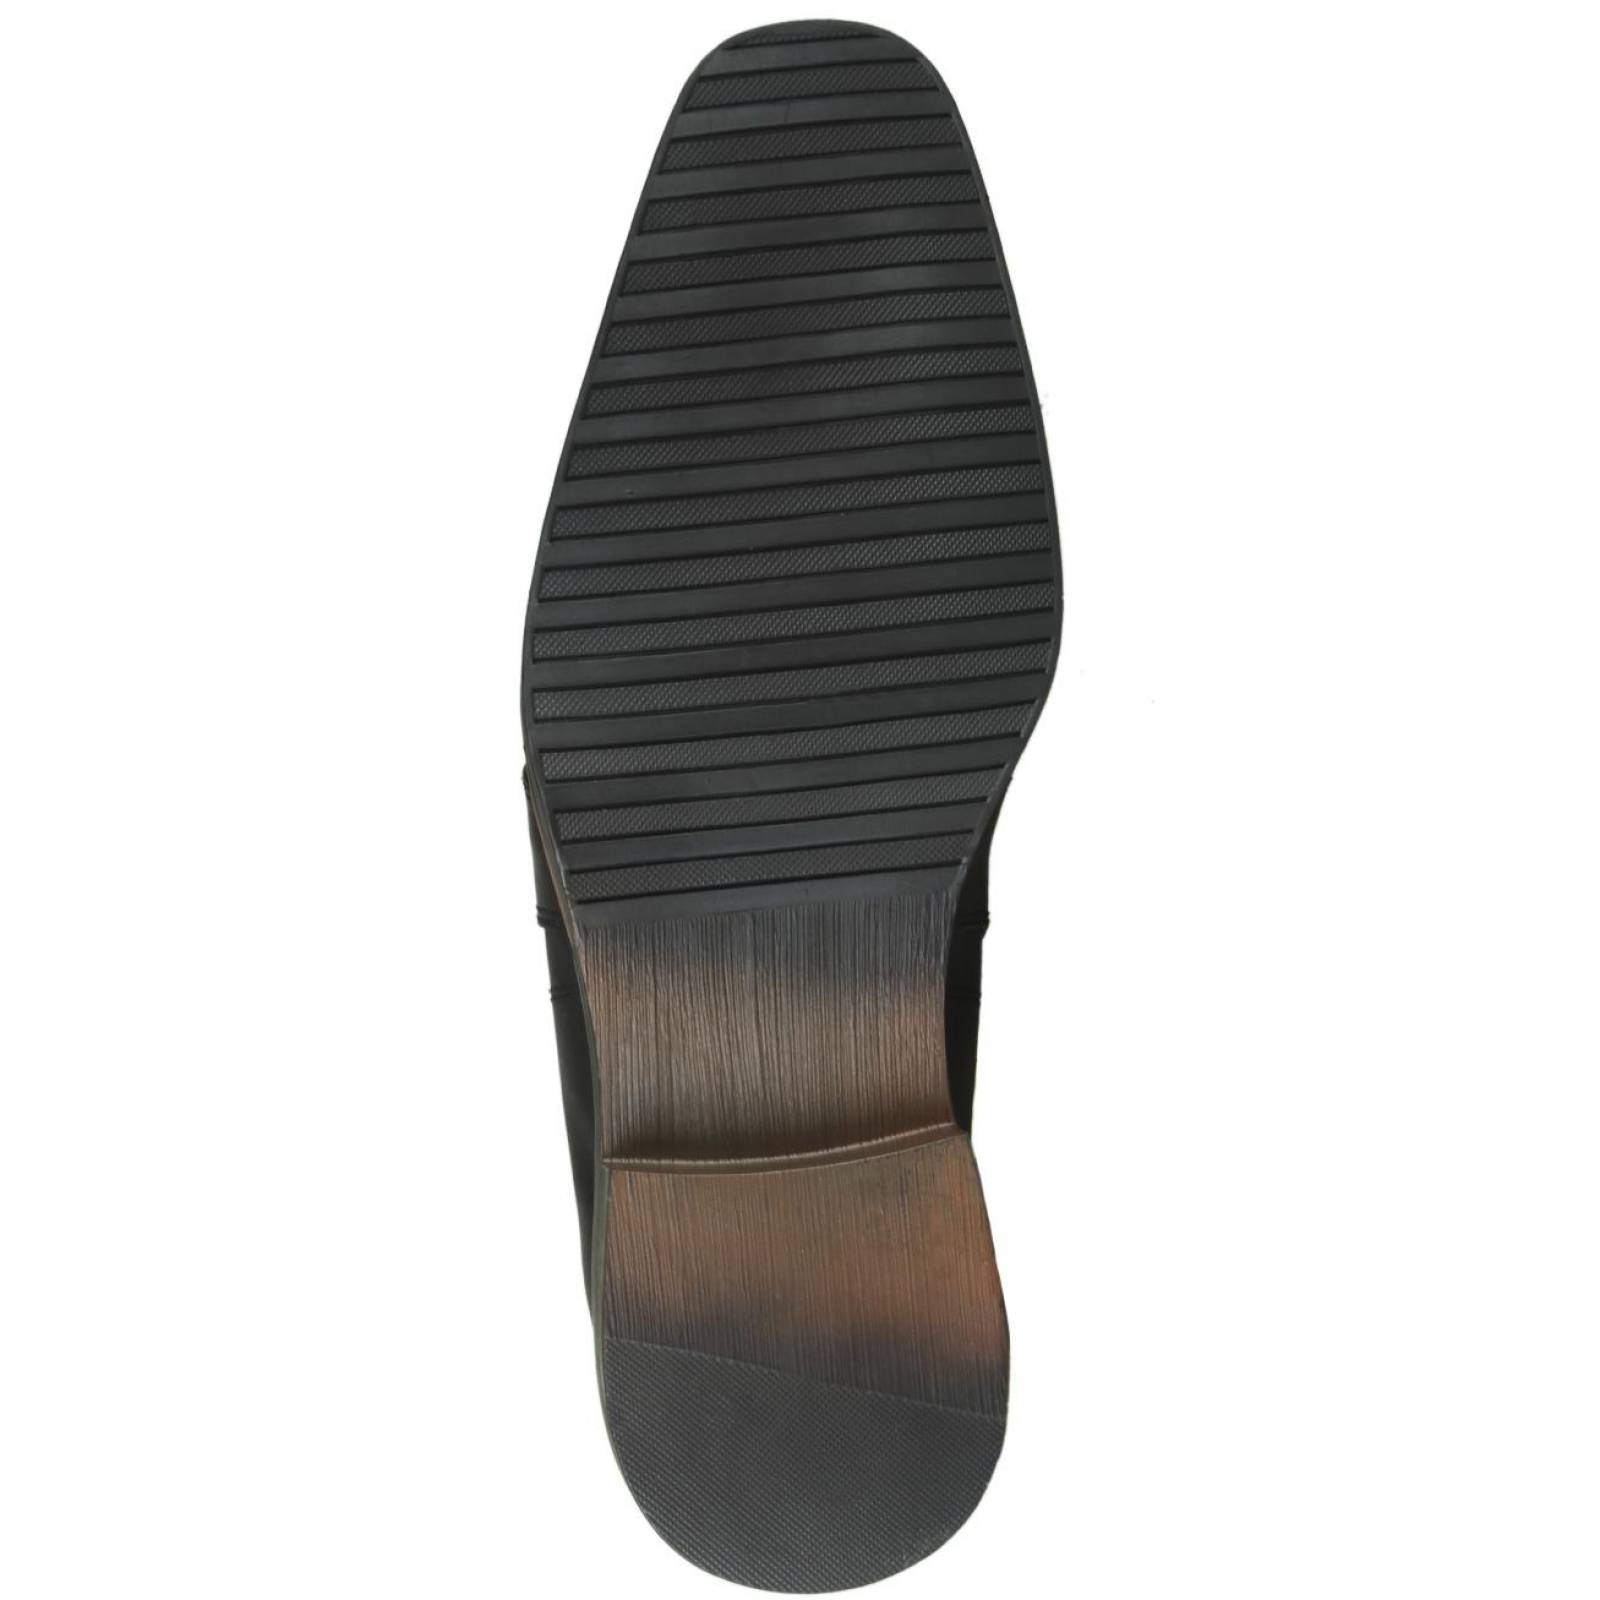 Zapato Vestir Hombre Salvaje Tentación Negro 04702504 Piel